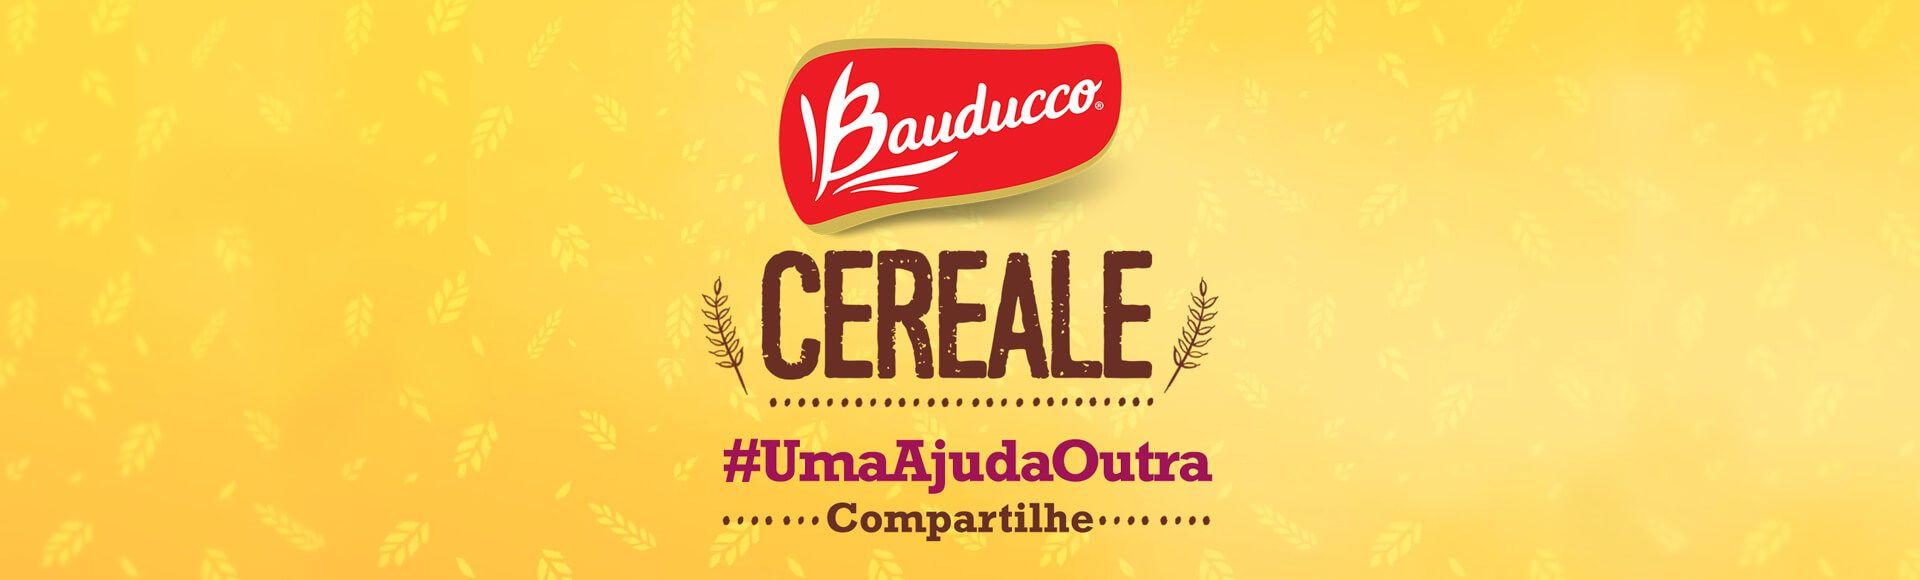 Bauducco Logo - cereale_02